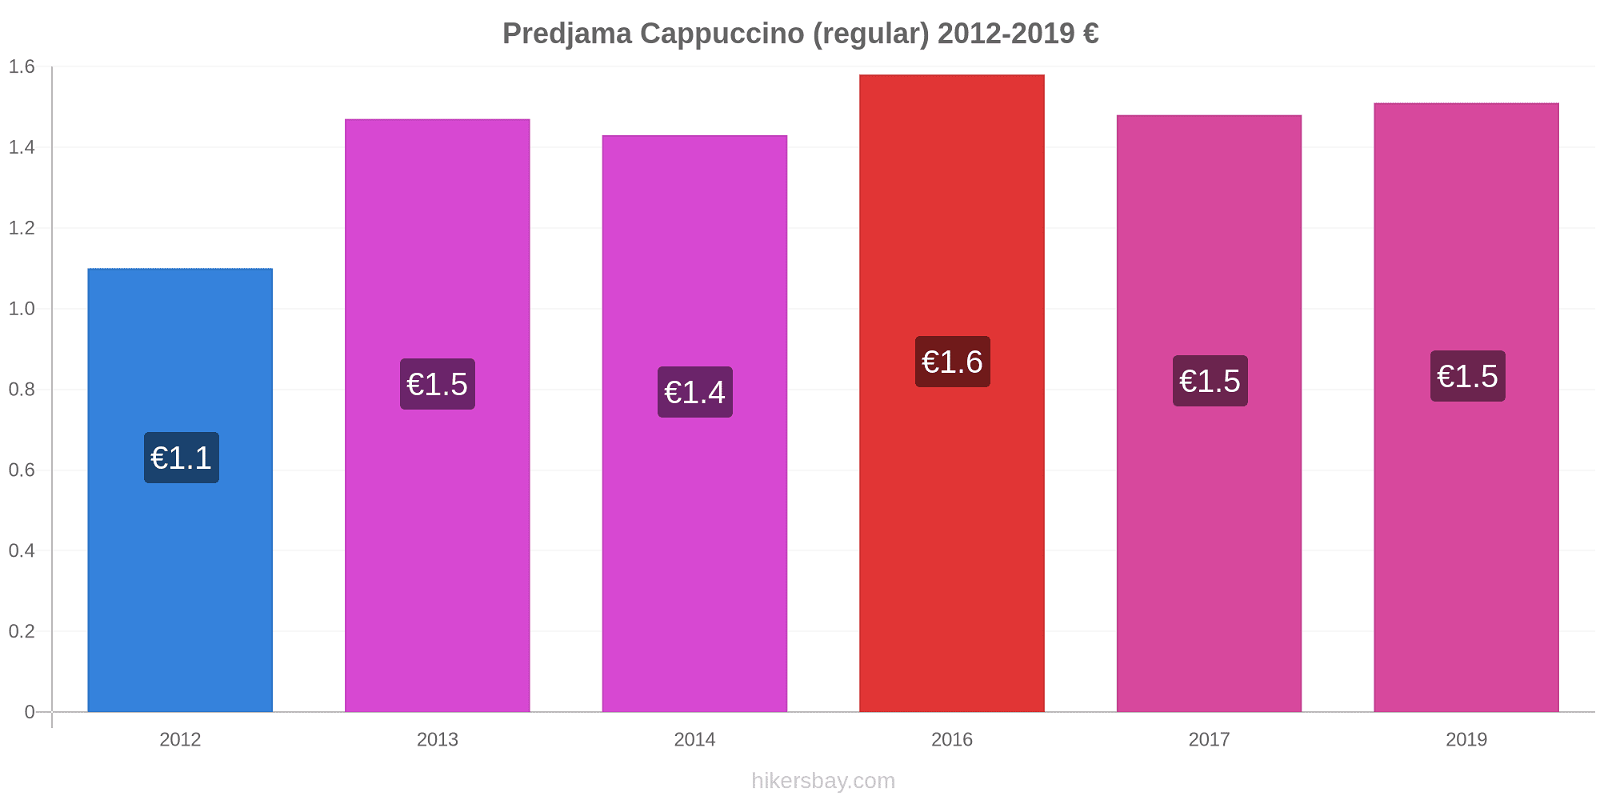 Predjama price changes Cappuccino (regular) hikersbay.com